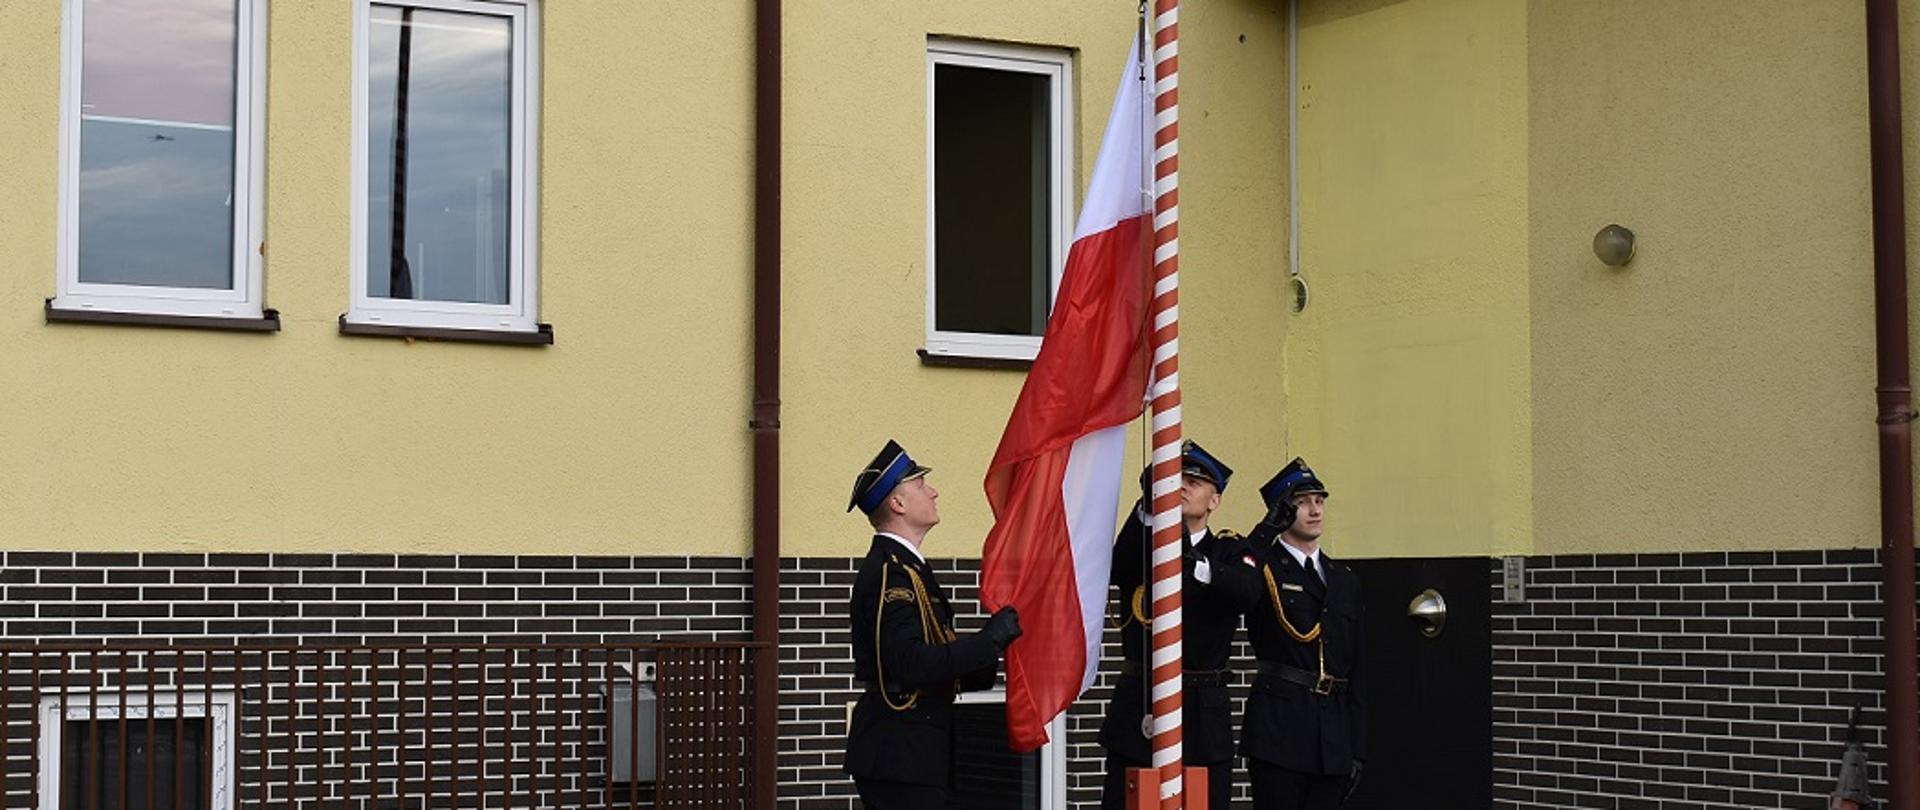 Dzień. Widok na ścianę budynku w kolorze żółtym. Przed budynkiem stoi maszt flagowy. Trzech funkcjonariuszy ubranych w umundurowanie wyjściowe, złote sznury galowe oraz rogatywki stoi przy maszcie. Jednej z nich trzyma flagę Polski. Drugi wciąga flagę Polski na maszt. Trzeci stoi obok oddając honory - salutuje.